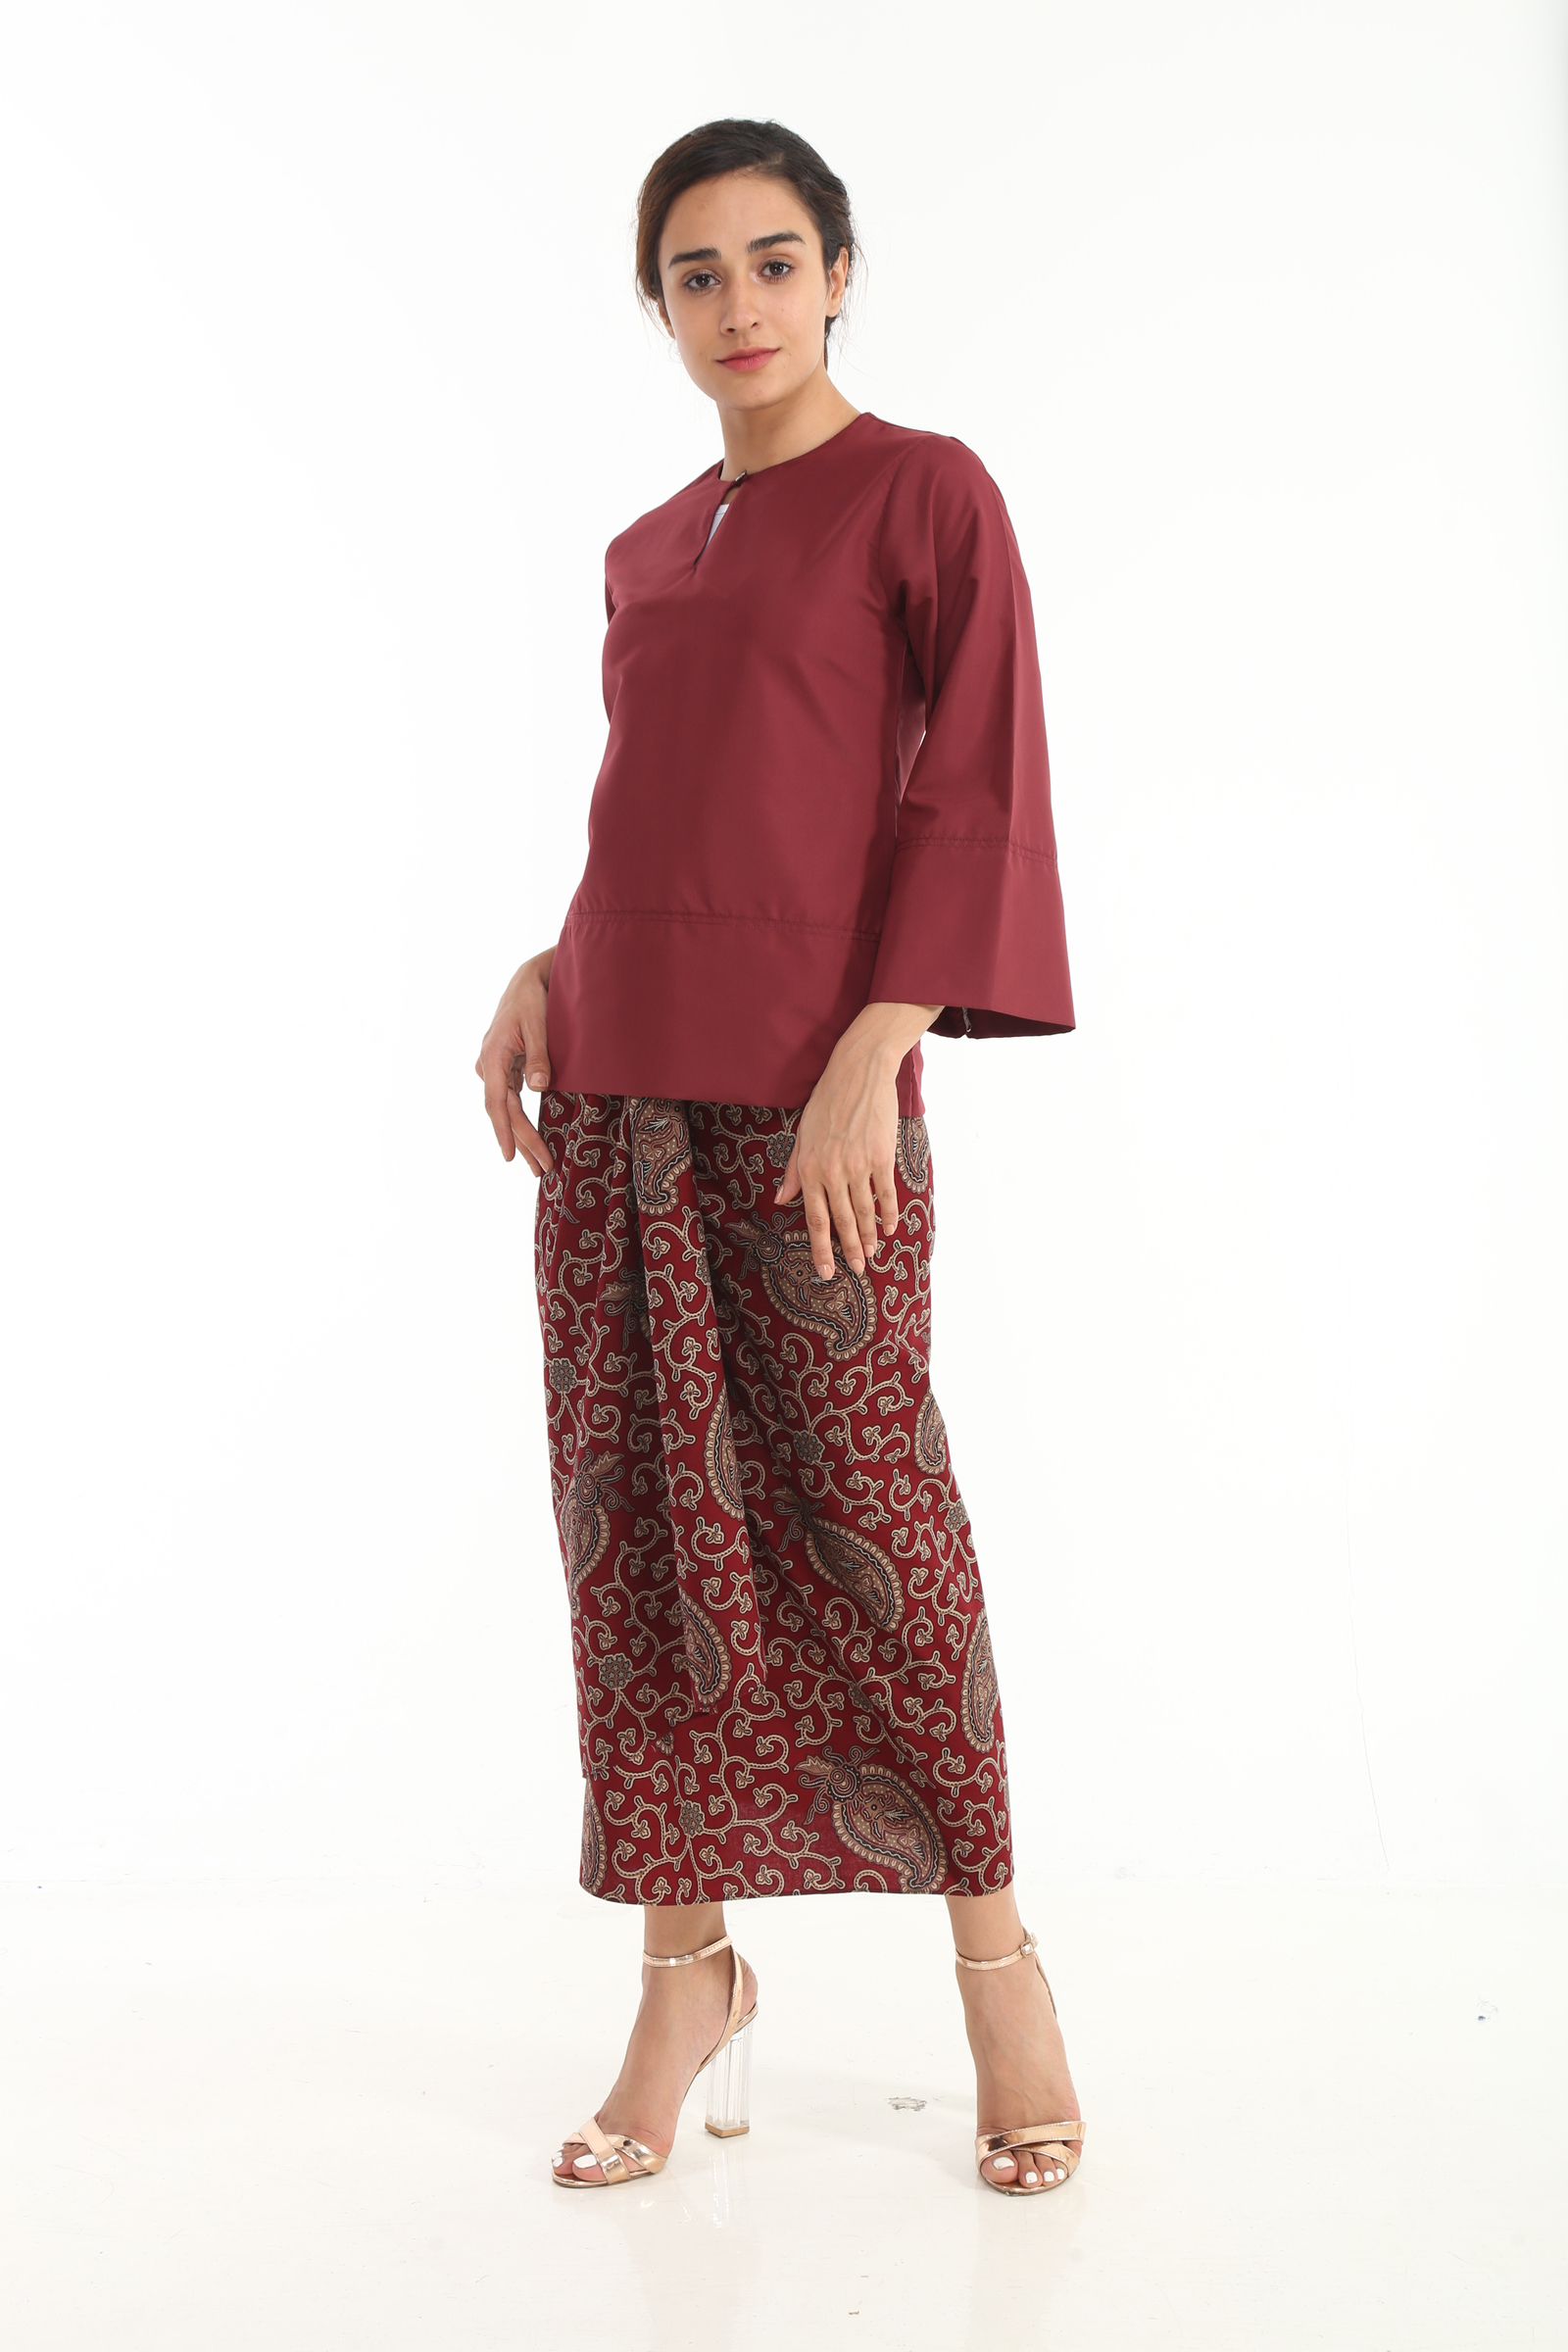 Baju Kurung Kedah Qaseh - Sewing patch pocket cara jahit poket baju